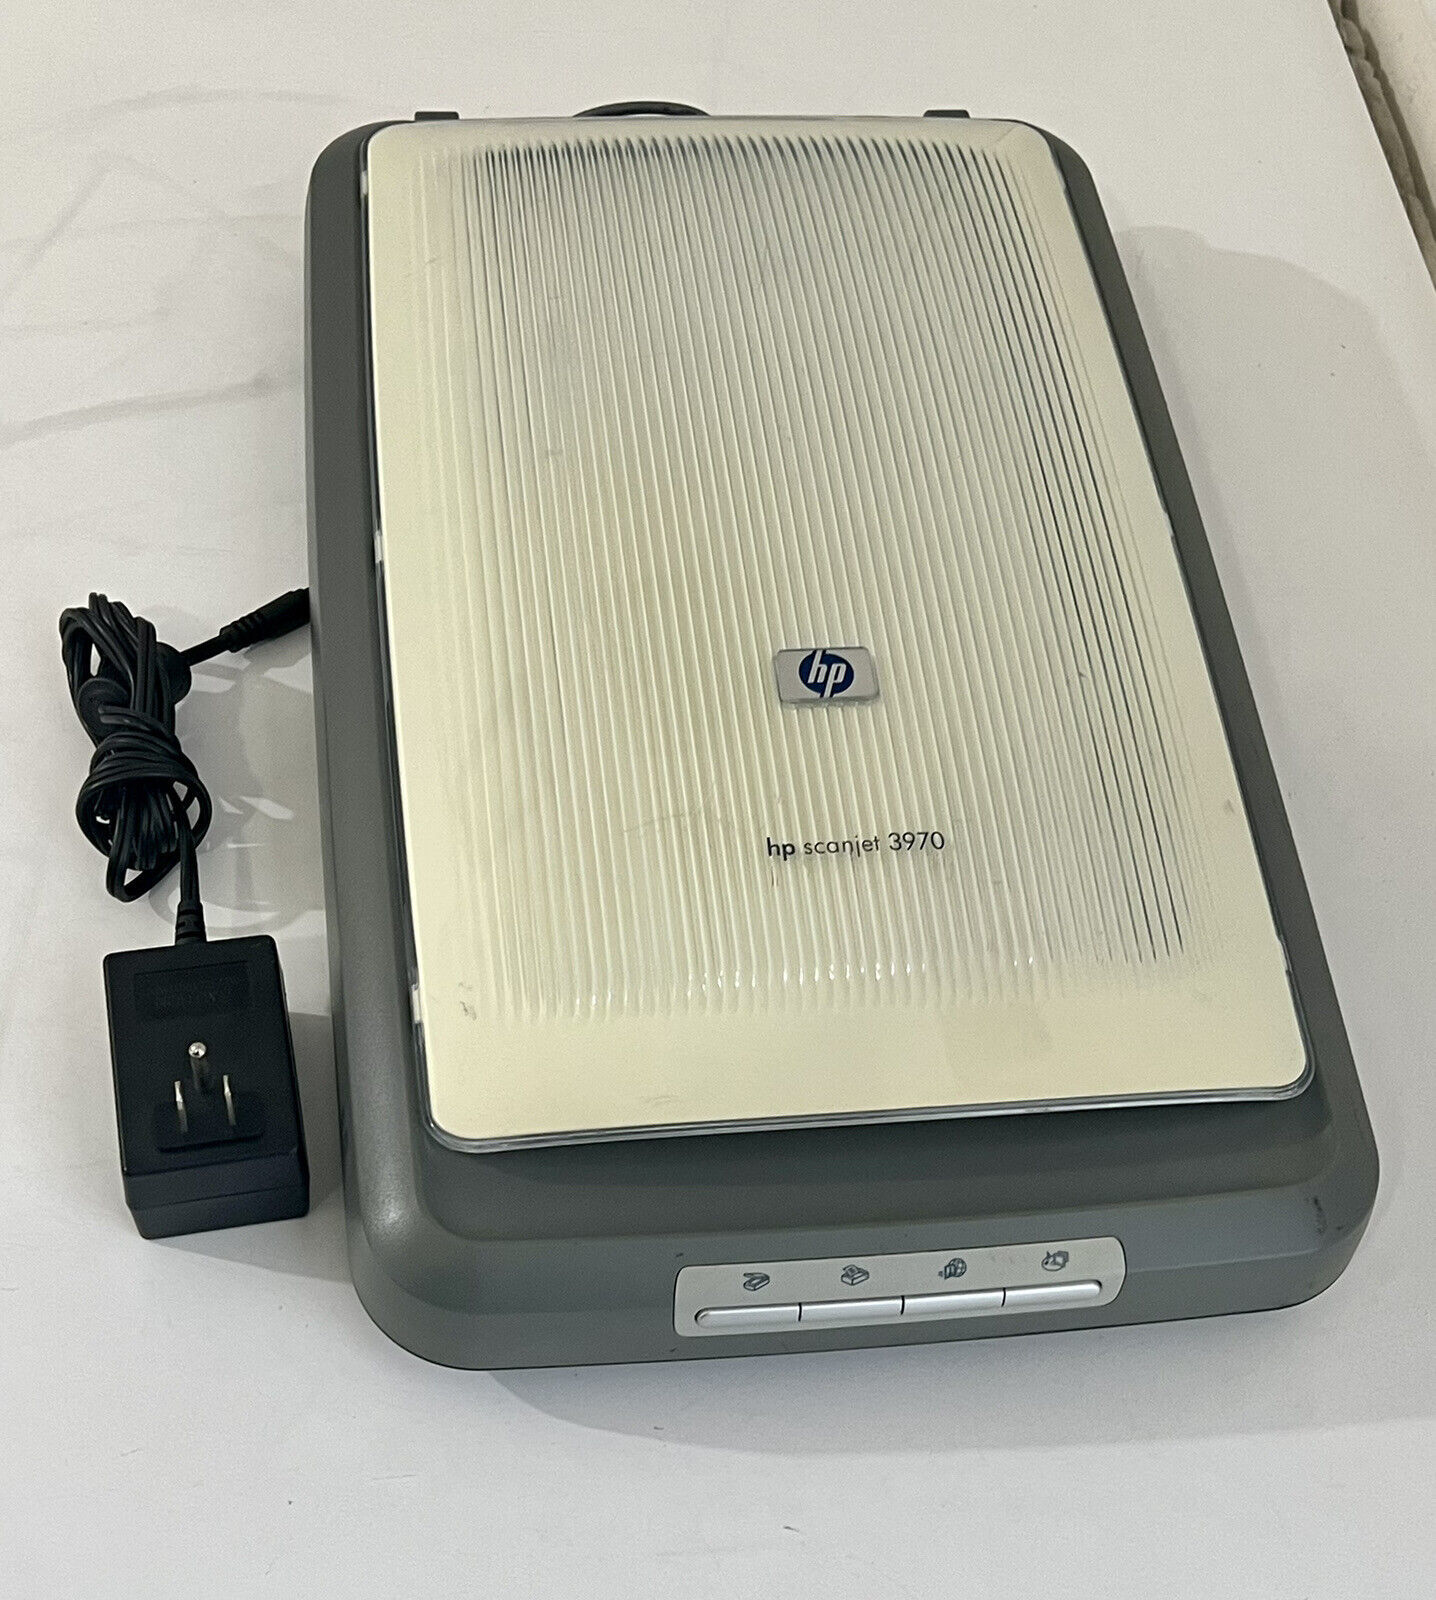 HP ScanJet 3970 Flatbed Scanner Q3190A - $25.60